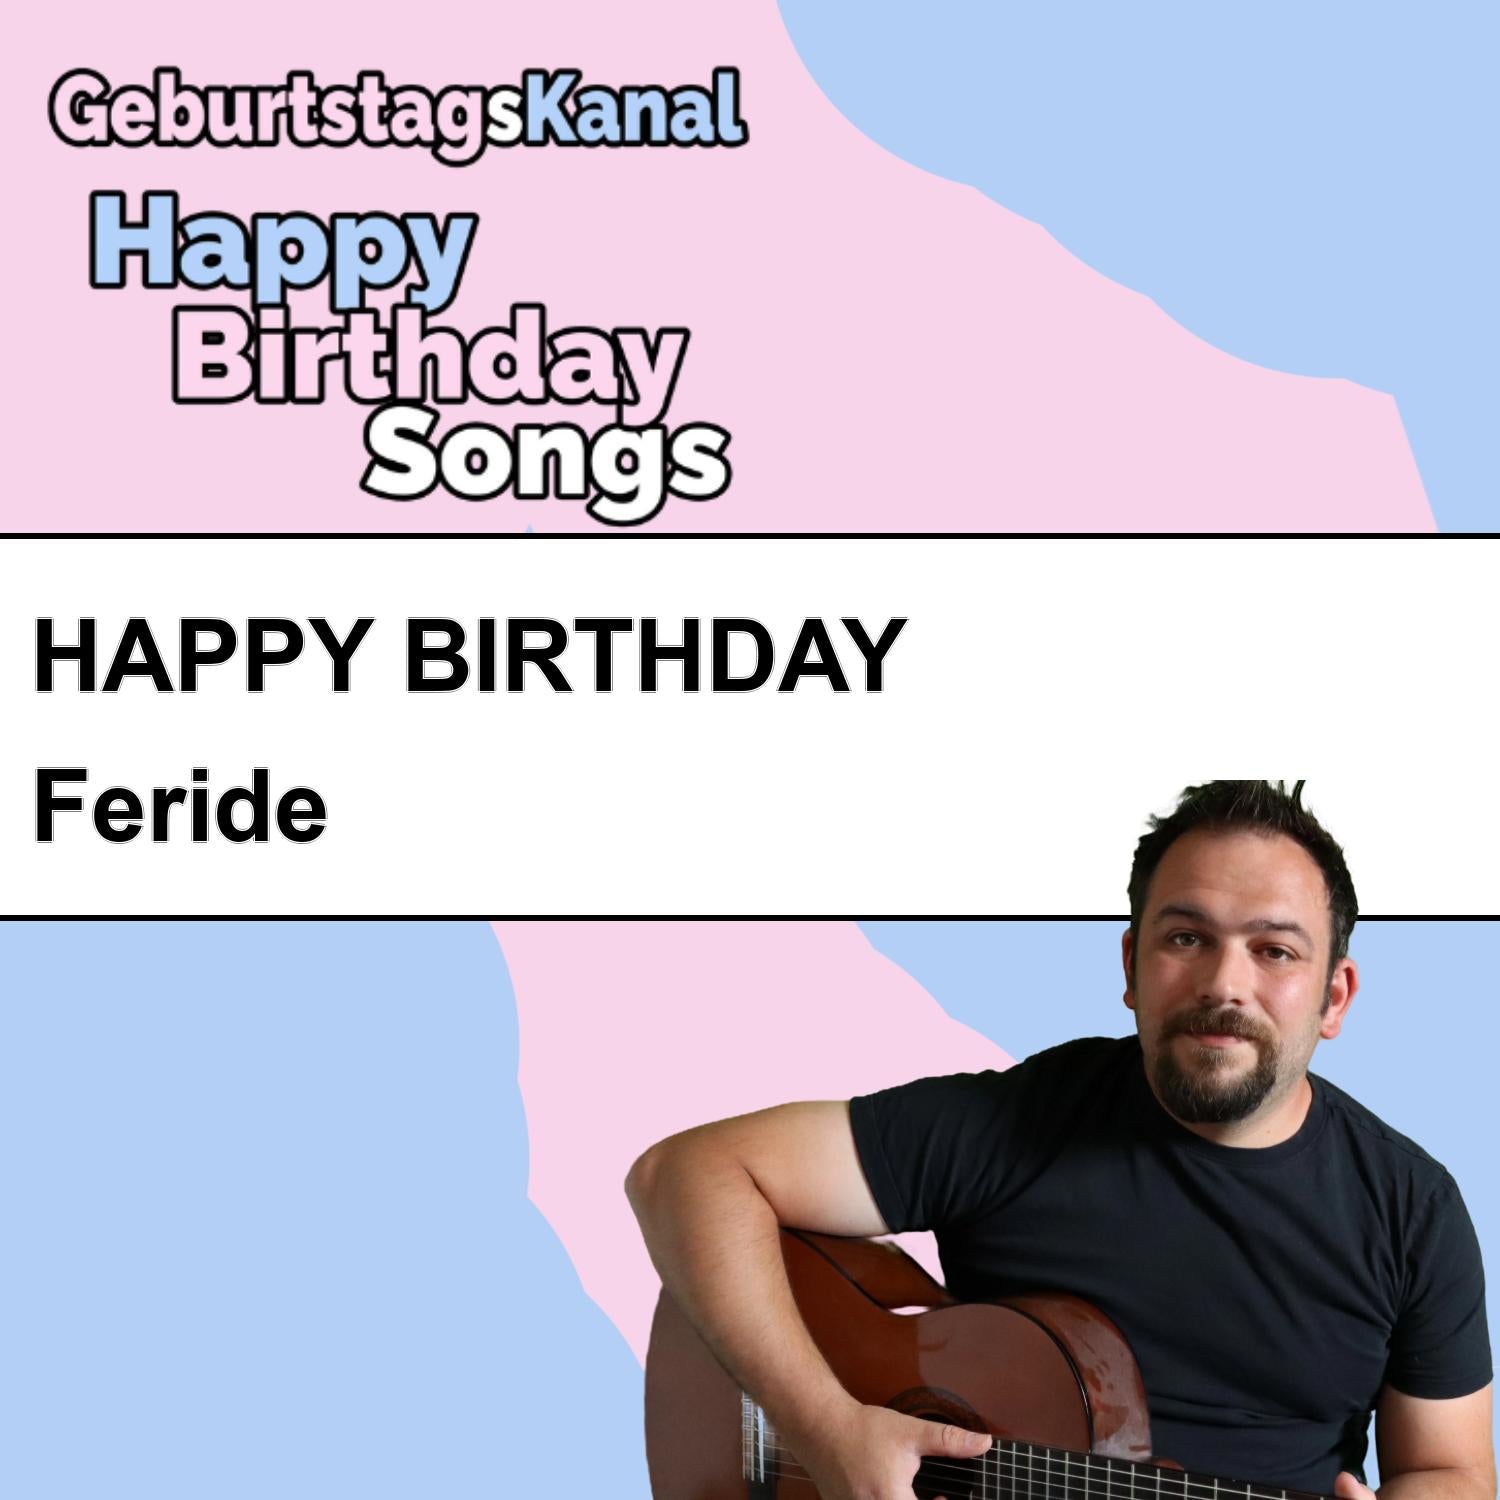 Produktbild Happy Birthday to you Feride mit Wunschgrußbotschaft